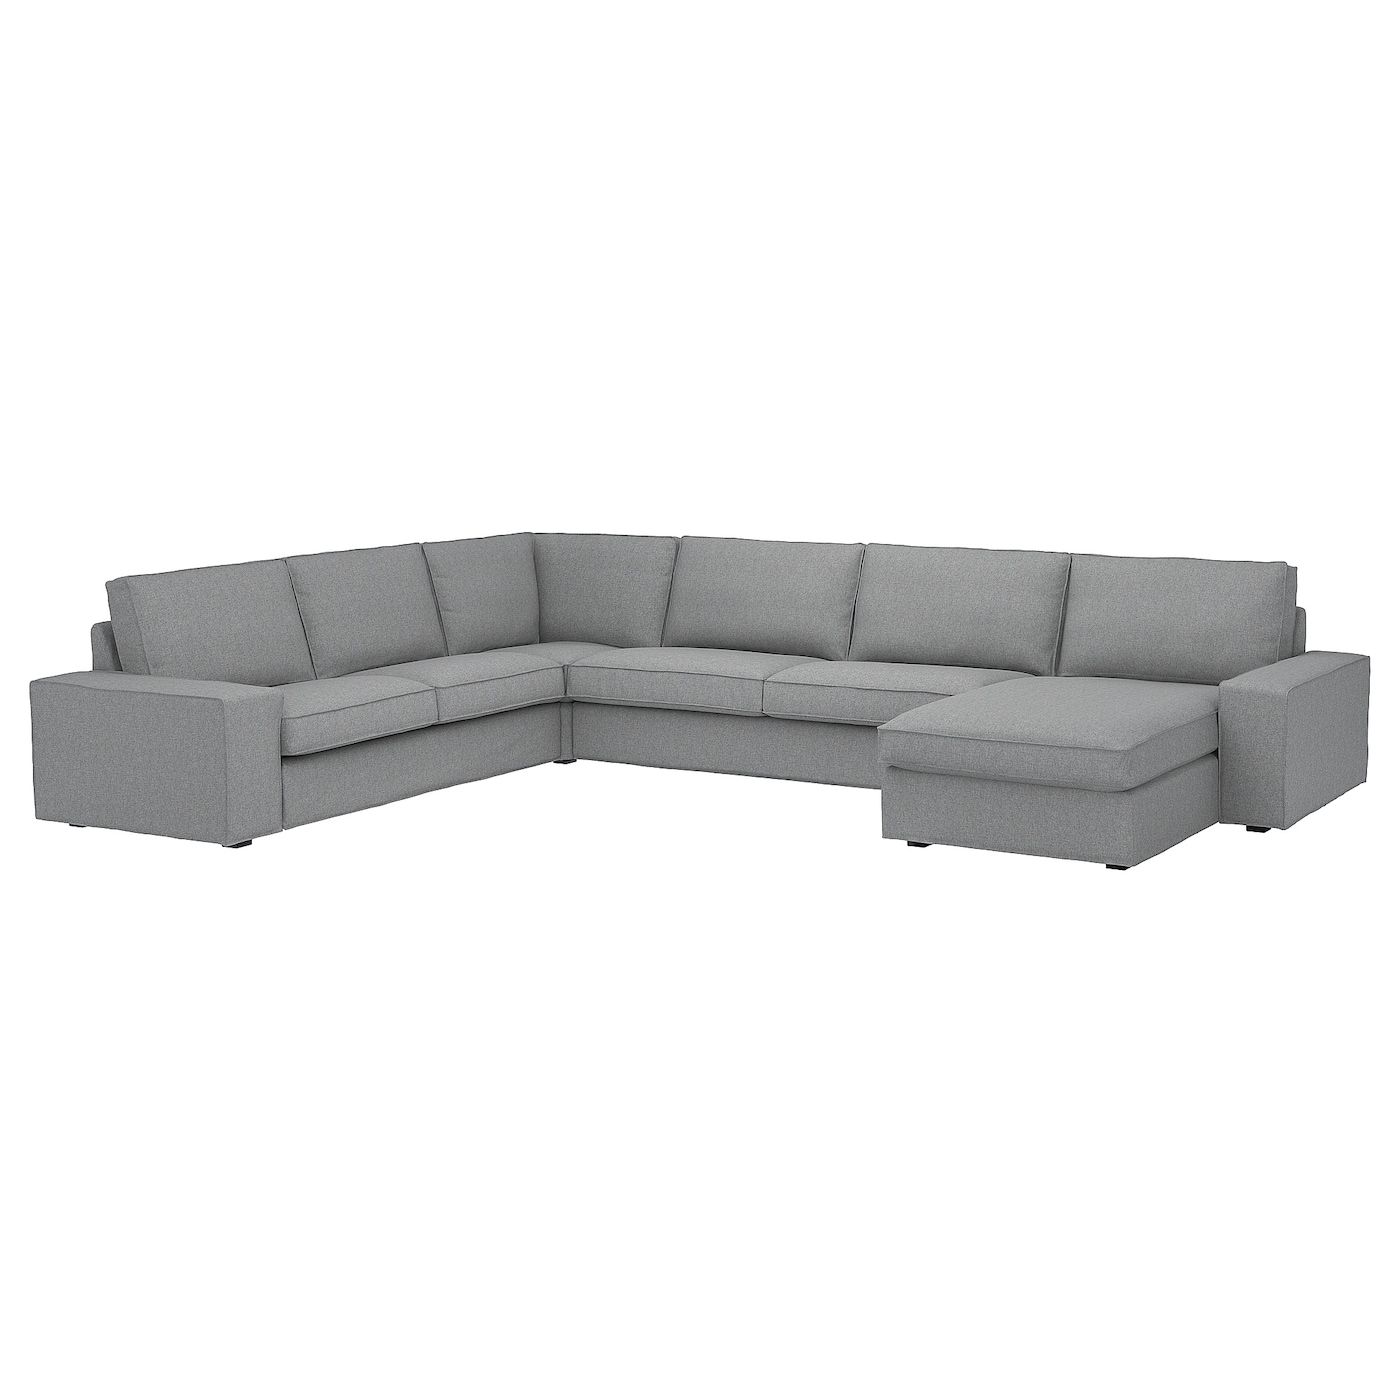 5-местный угловой диван и кушетка - IKEA KIVIK, 83x60x257/387см, серый/светло-серый, КИВИК ИКЕА